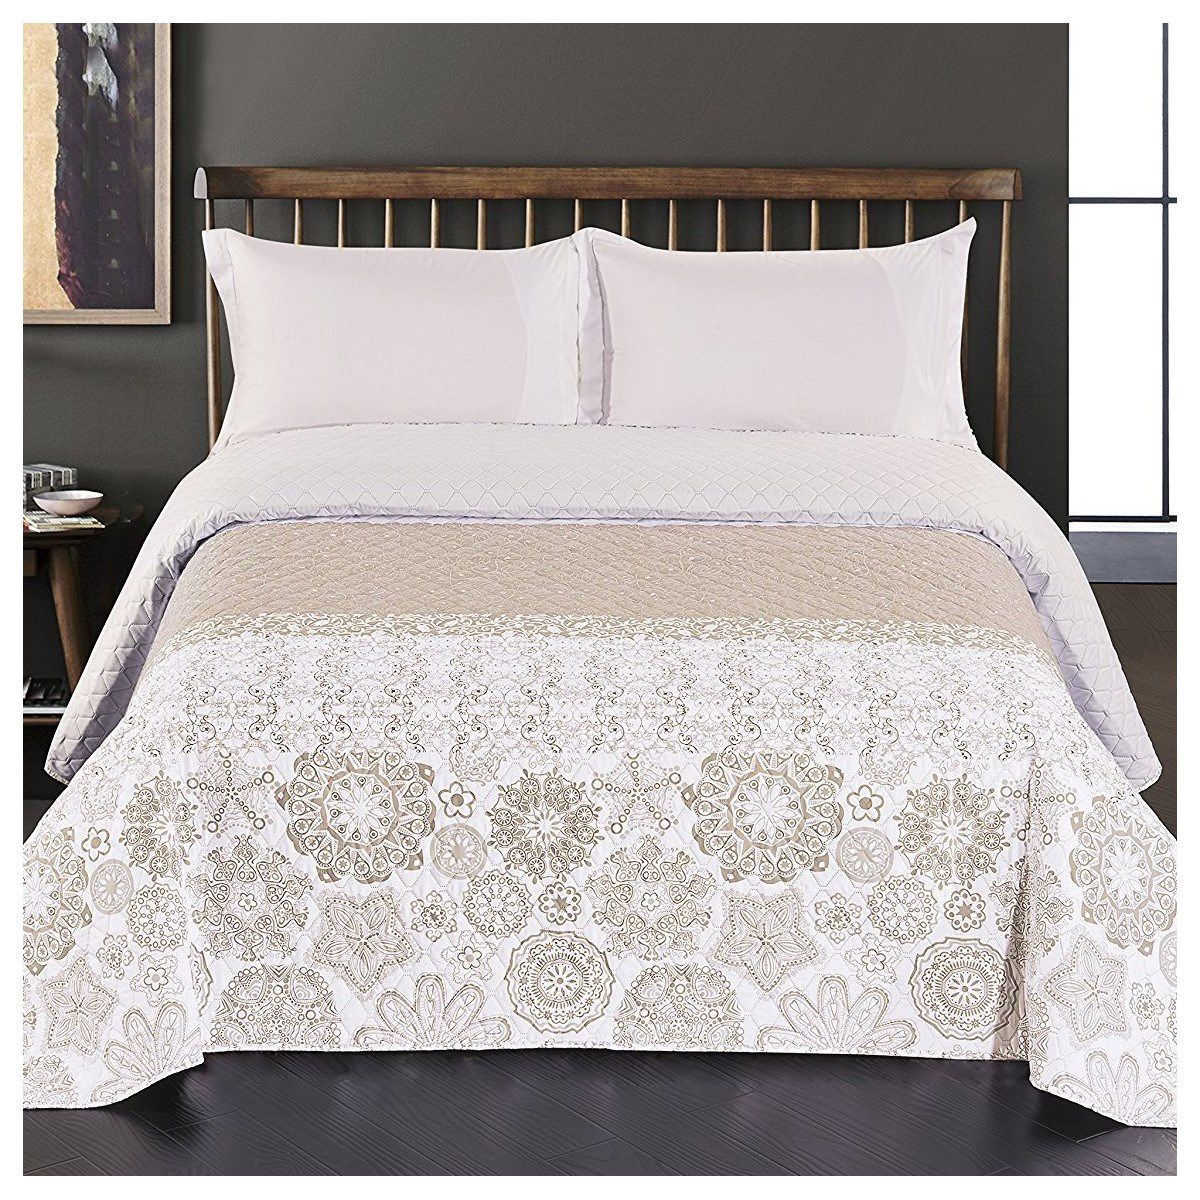 Oboustranný přehoz na postel DecoKing Alhambra béžový/bílý, velikost 220x240 - 4home.cz